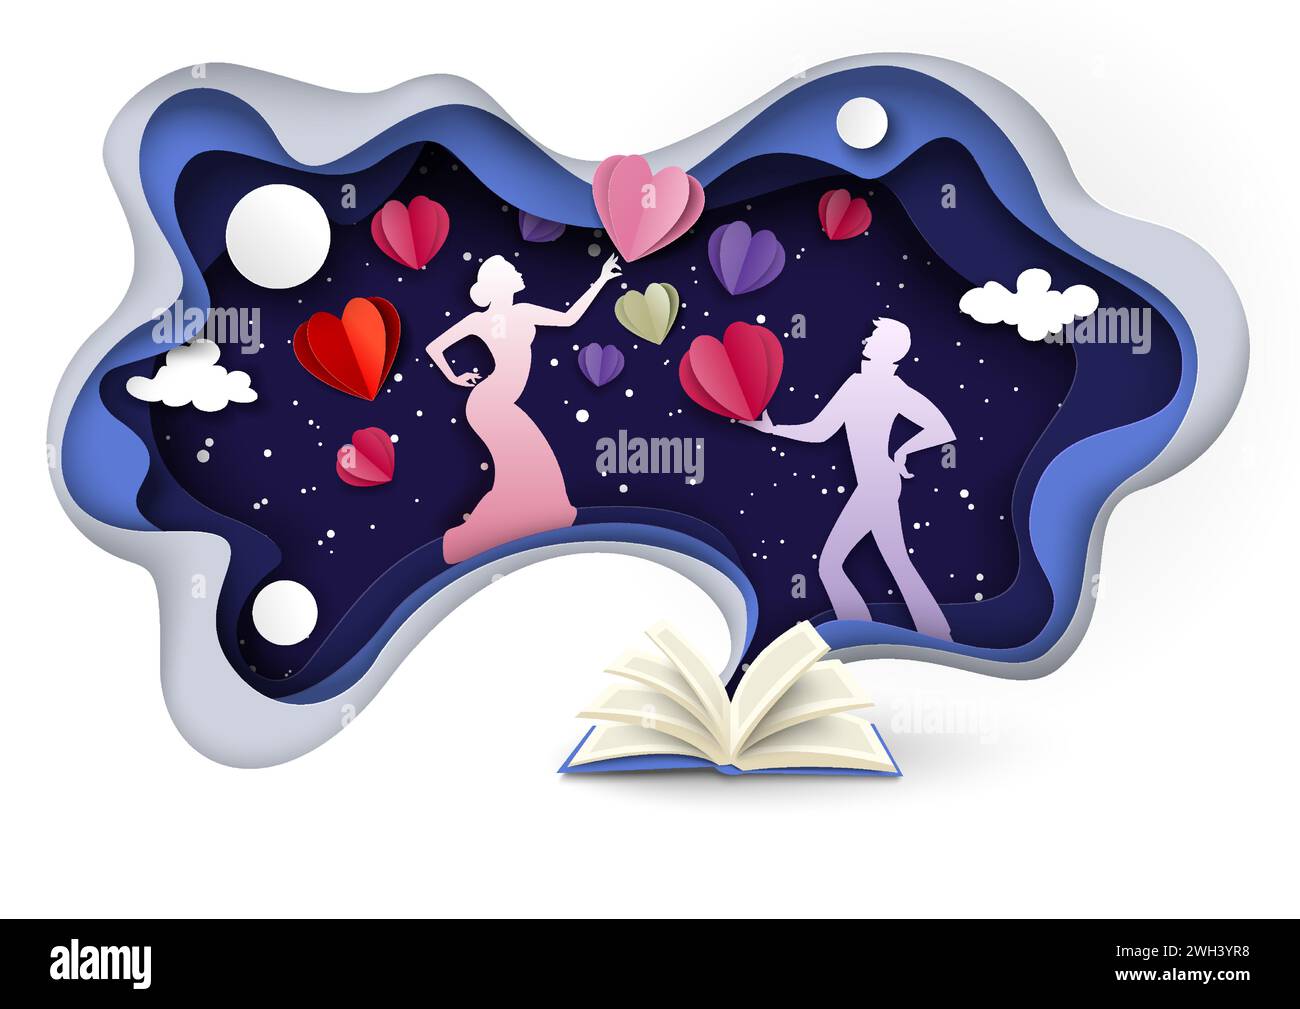 Romantique livre d'histoire d'amour artisanat papier illustration vectorielle origami avec silhouette d'amoureux masculins et féminins sur le ciel étoilé envoyant des cœurs les uns les autres Illustration de Vecteur